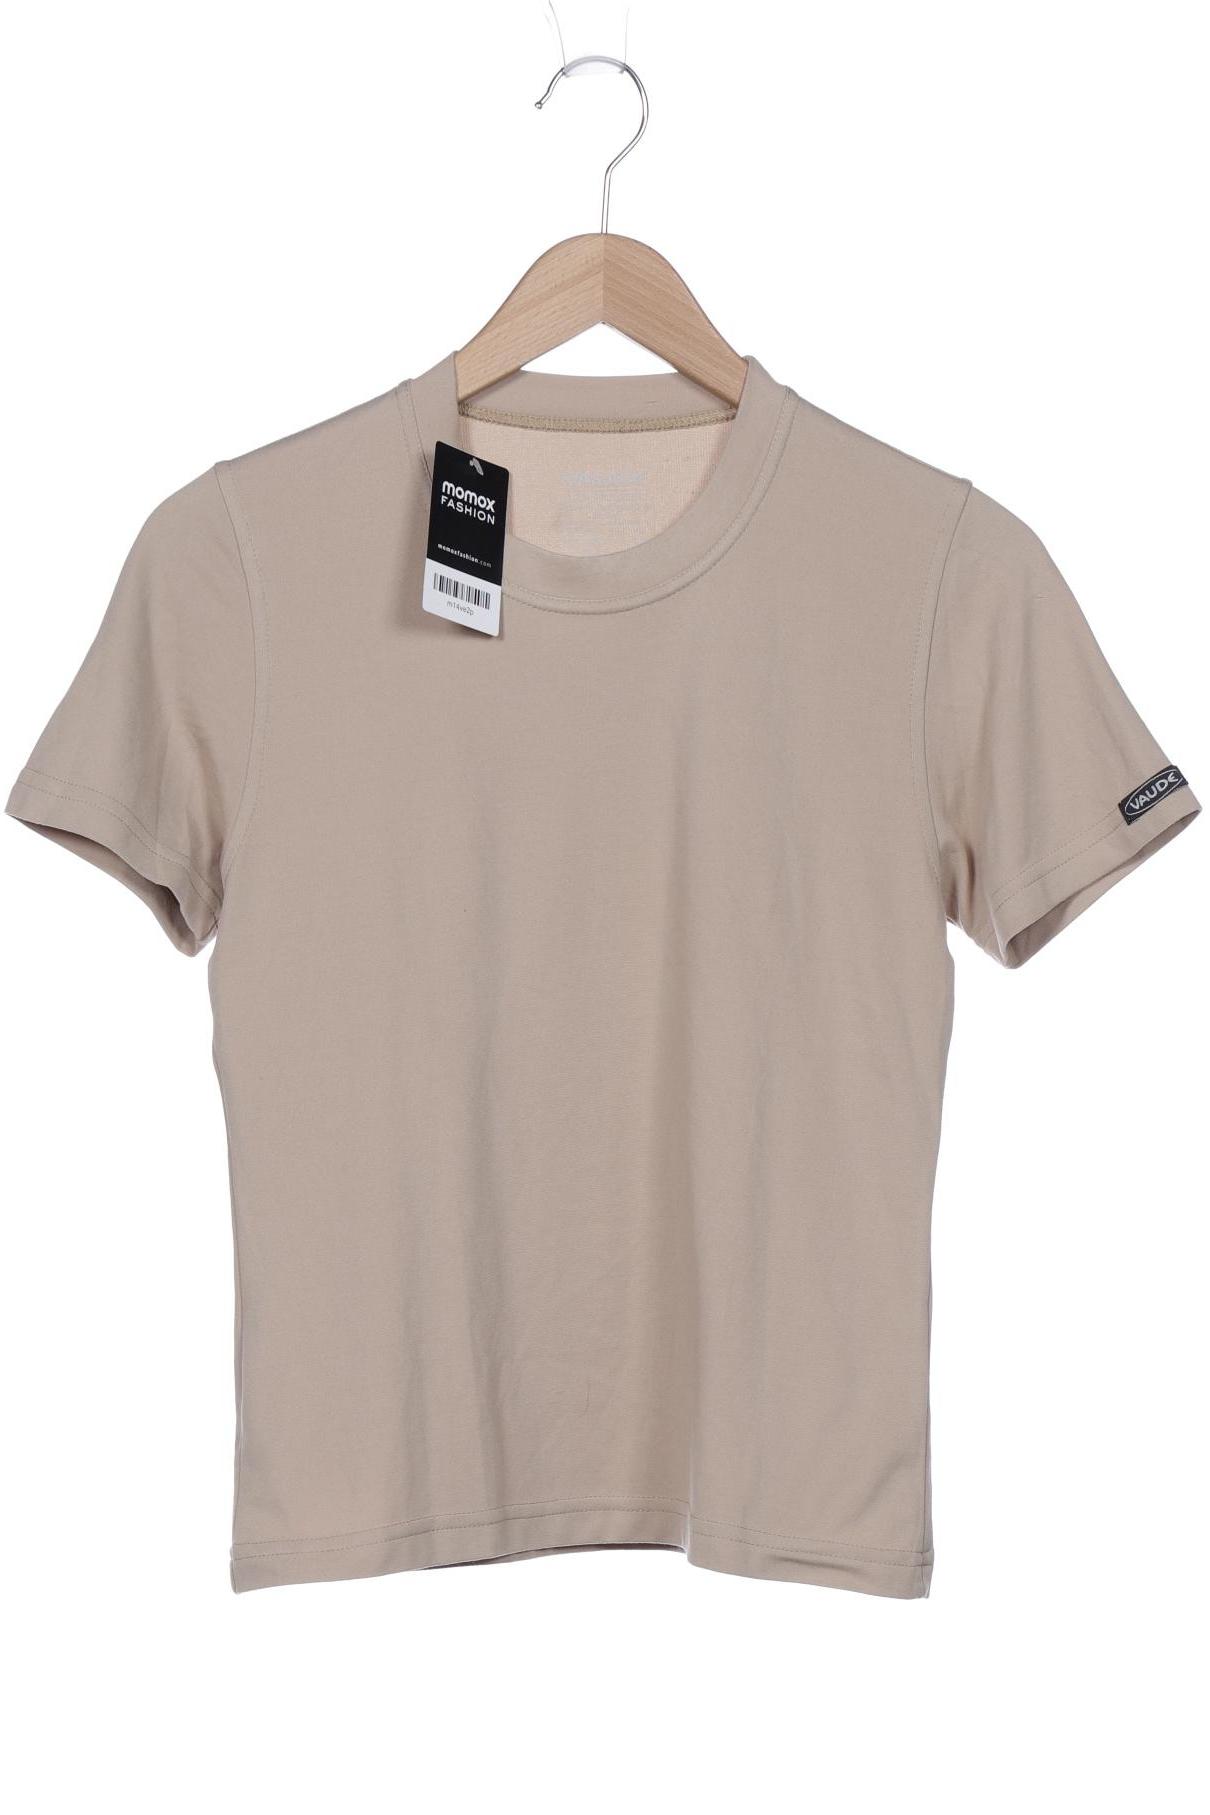 Vaude Damen T-Shirt, beige, Gr. 38 von Vaude